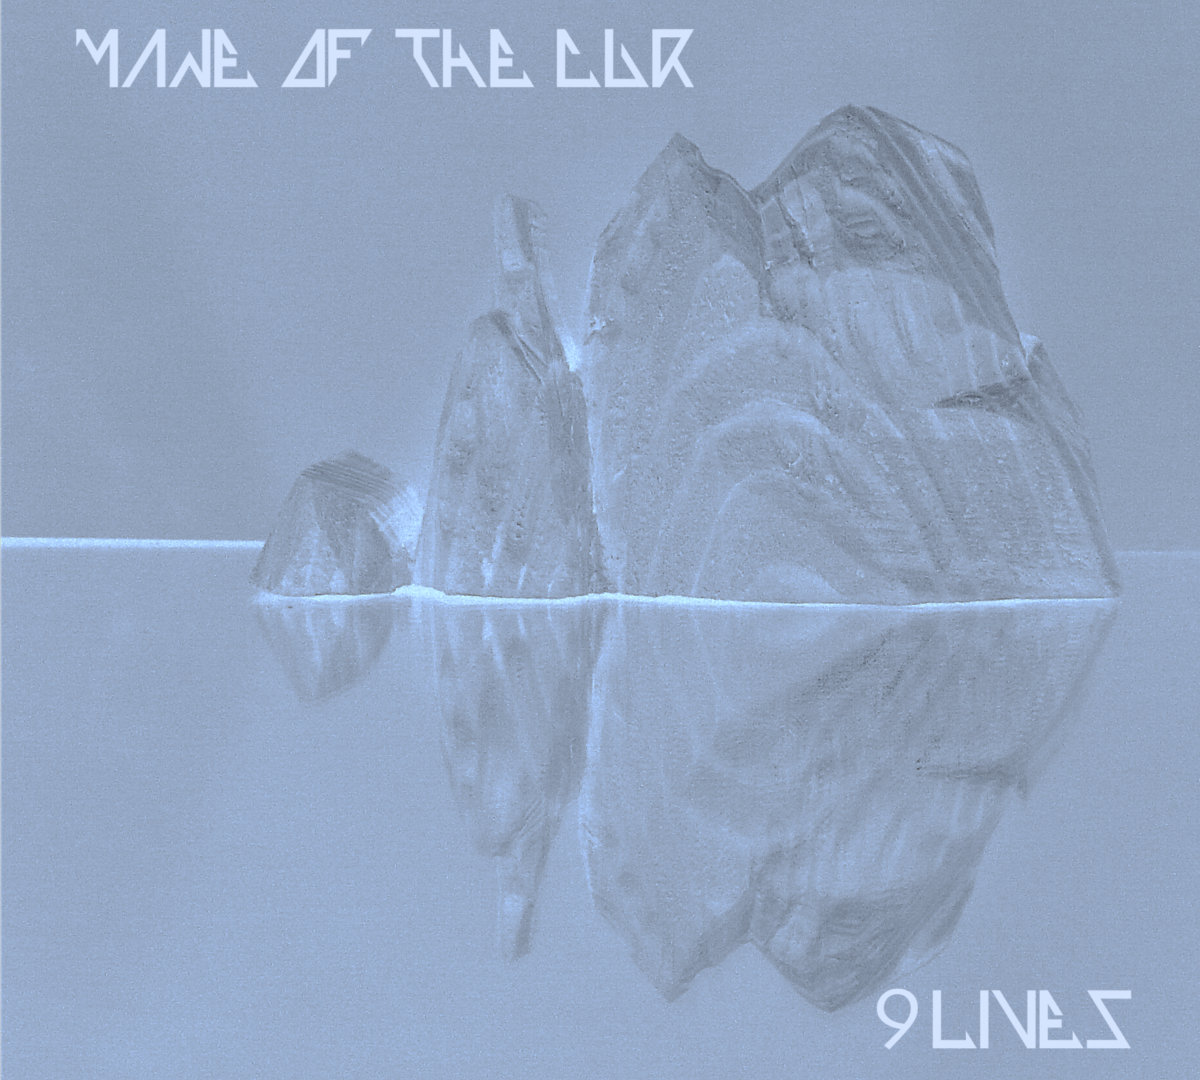 mane of the cur 9 lives